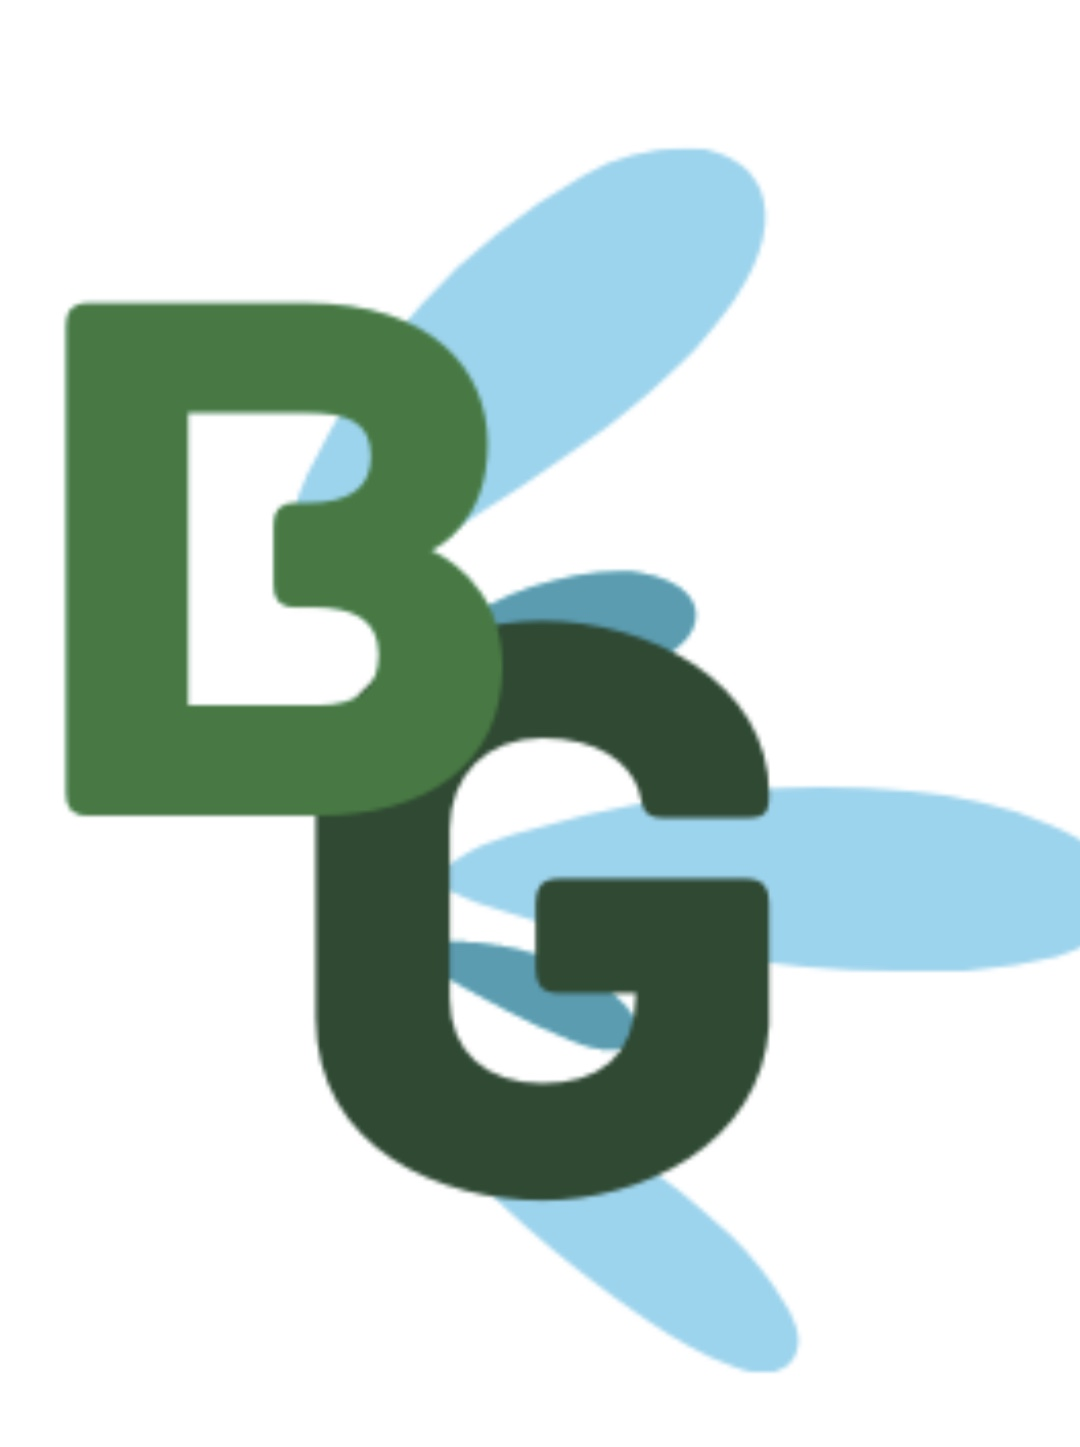 Big Green Outdoor Services's logo